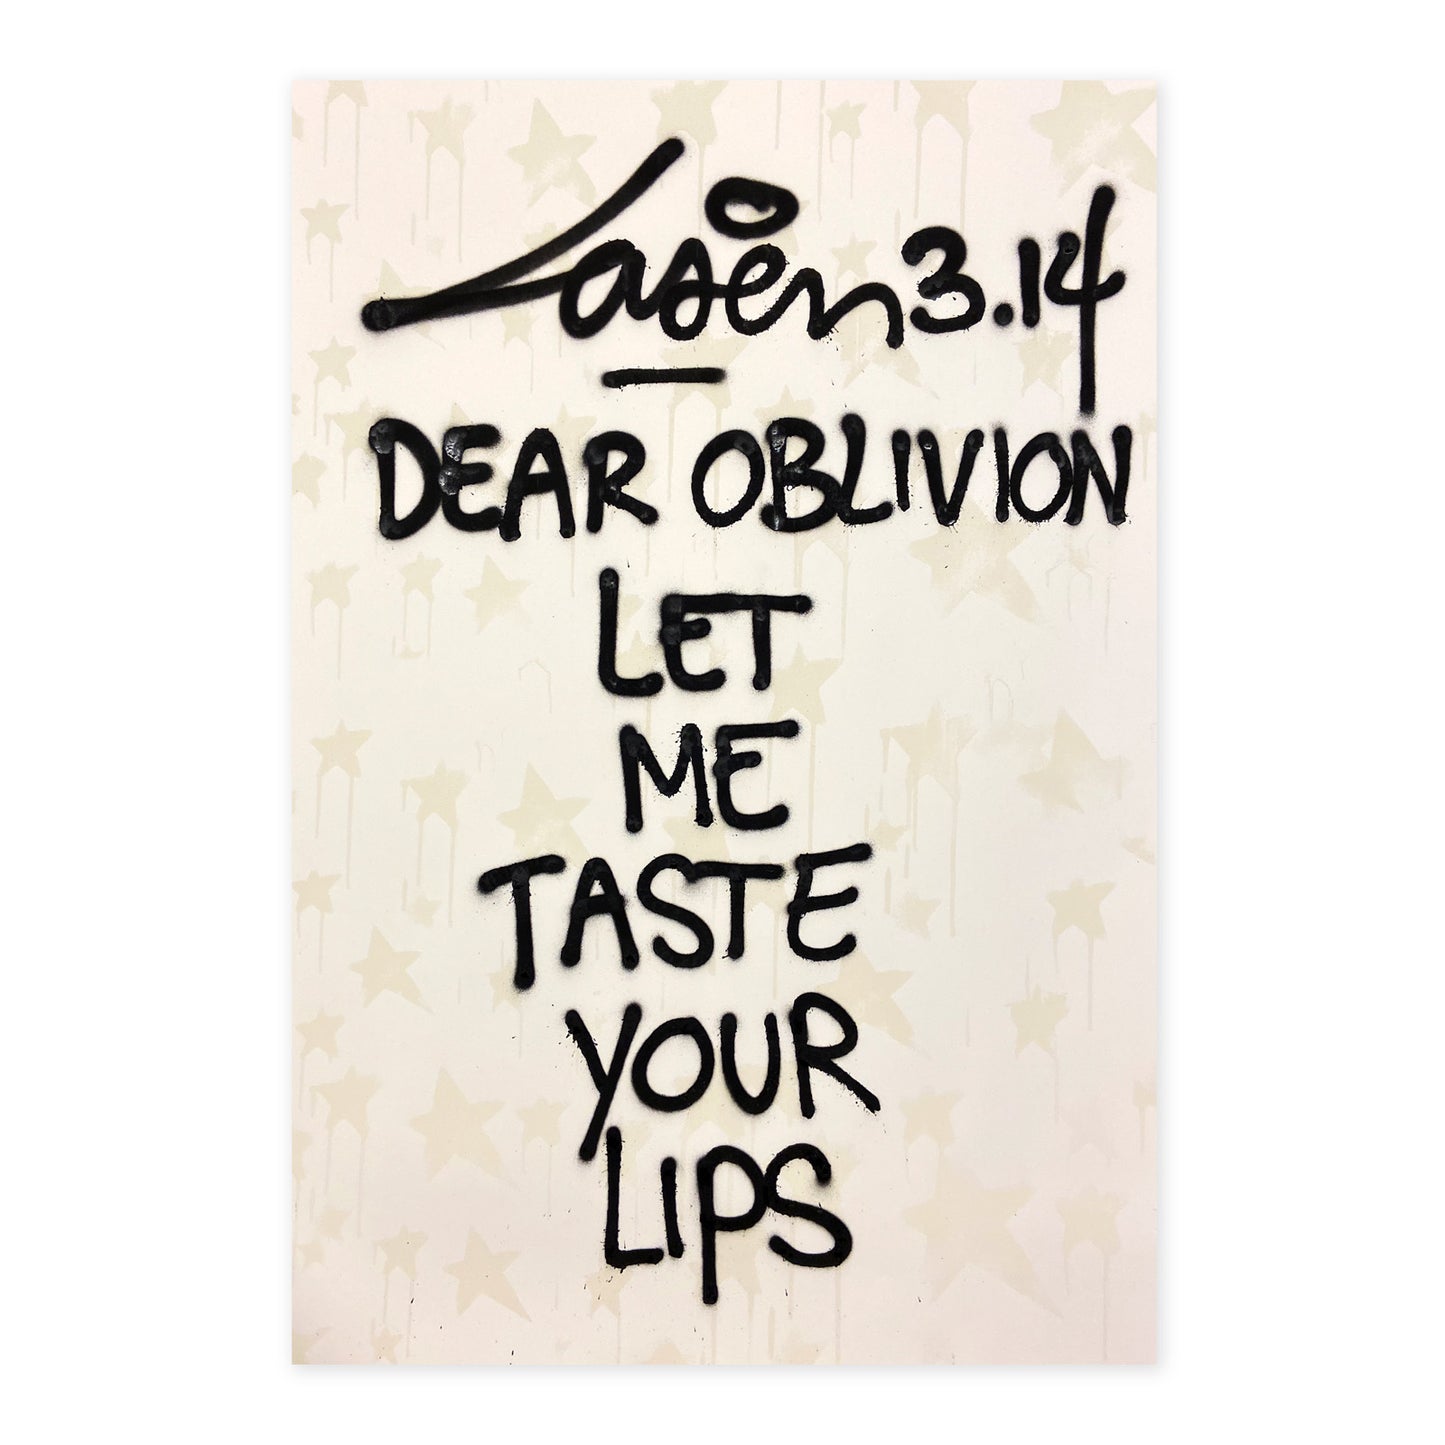 Dear Oblivion